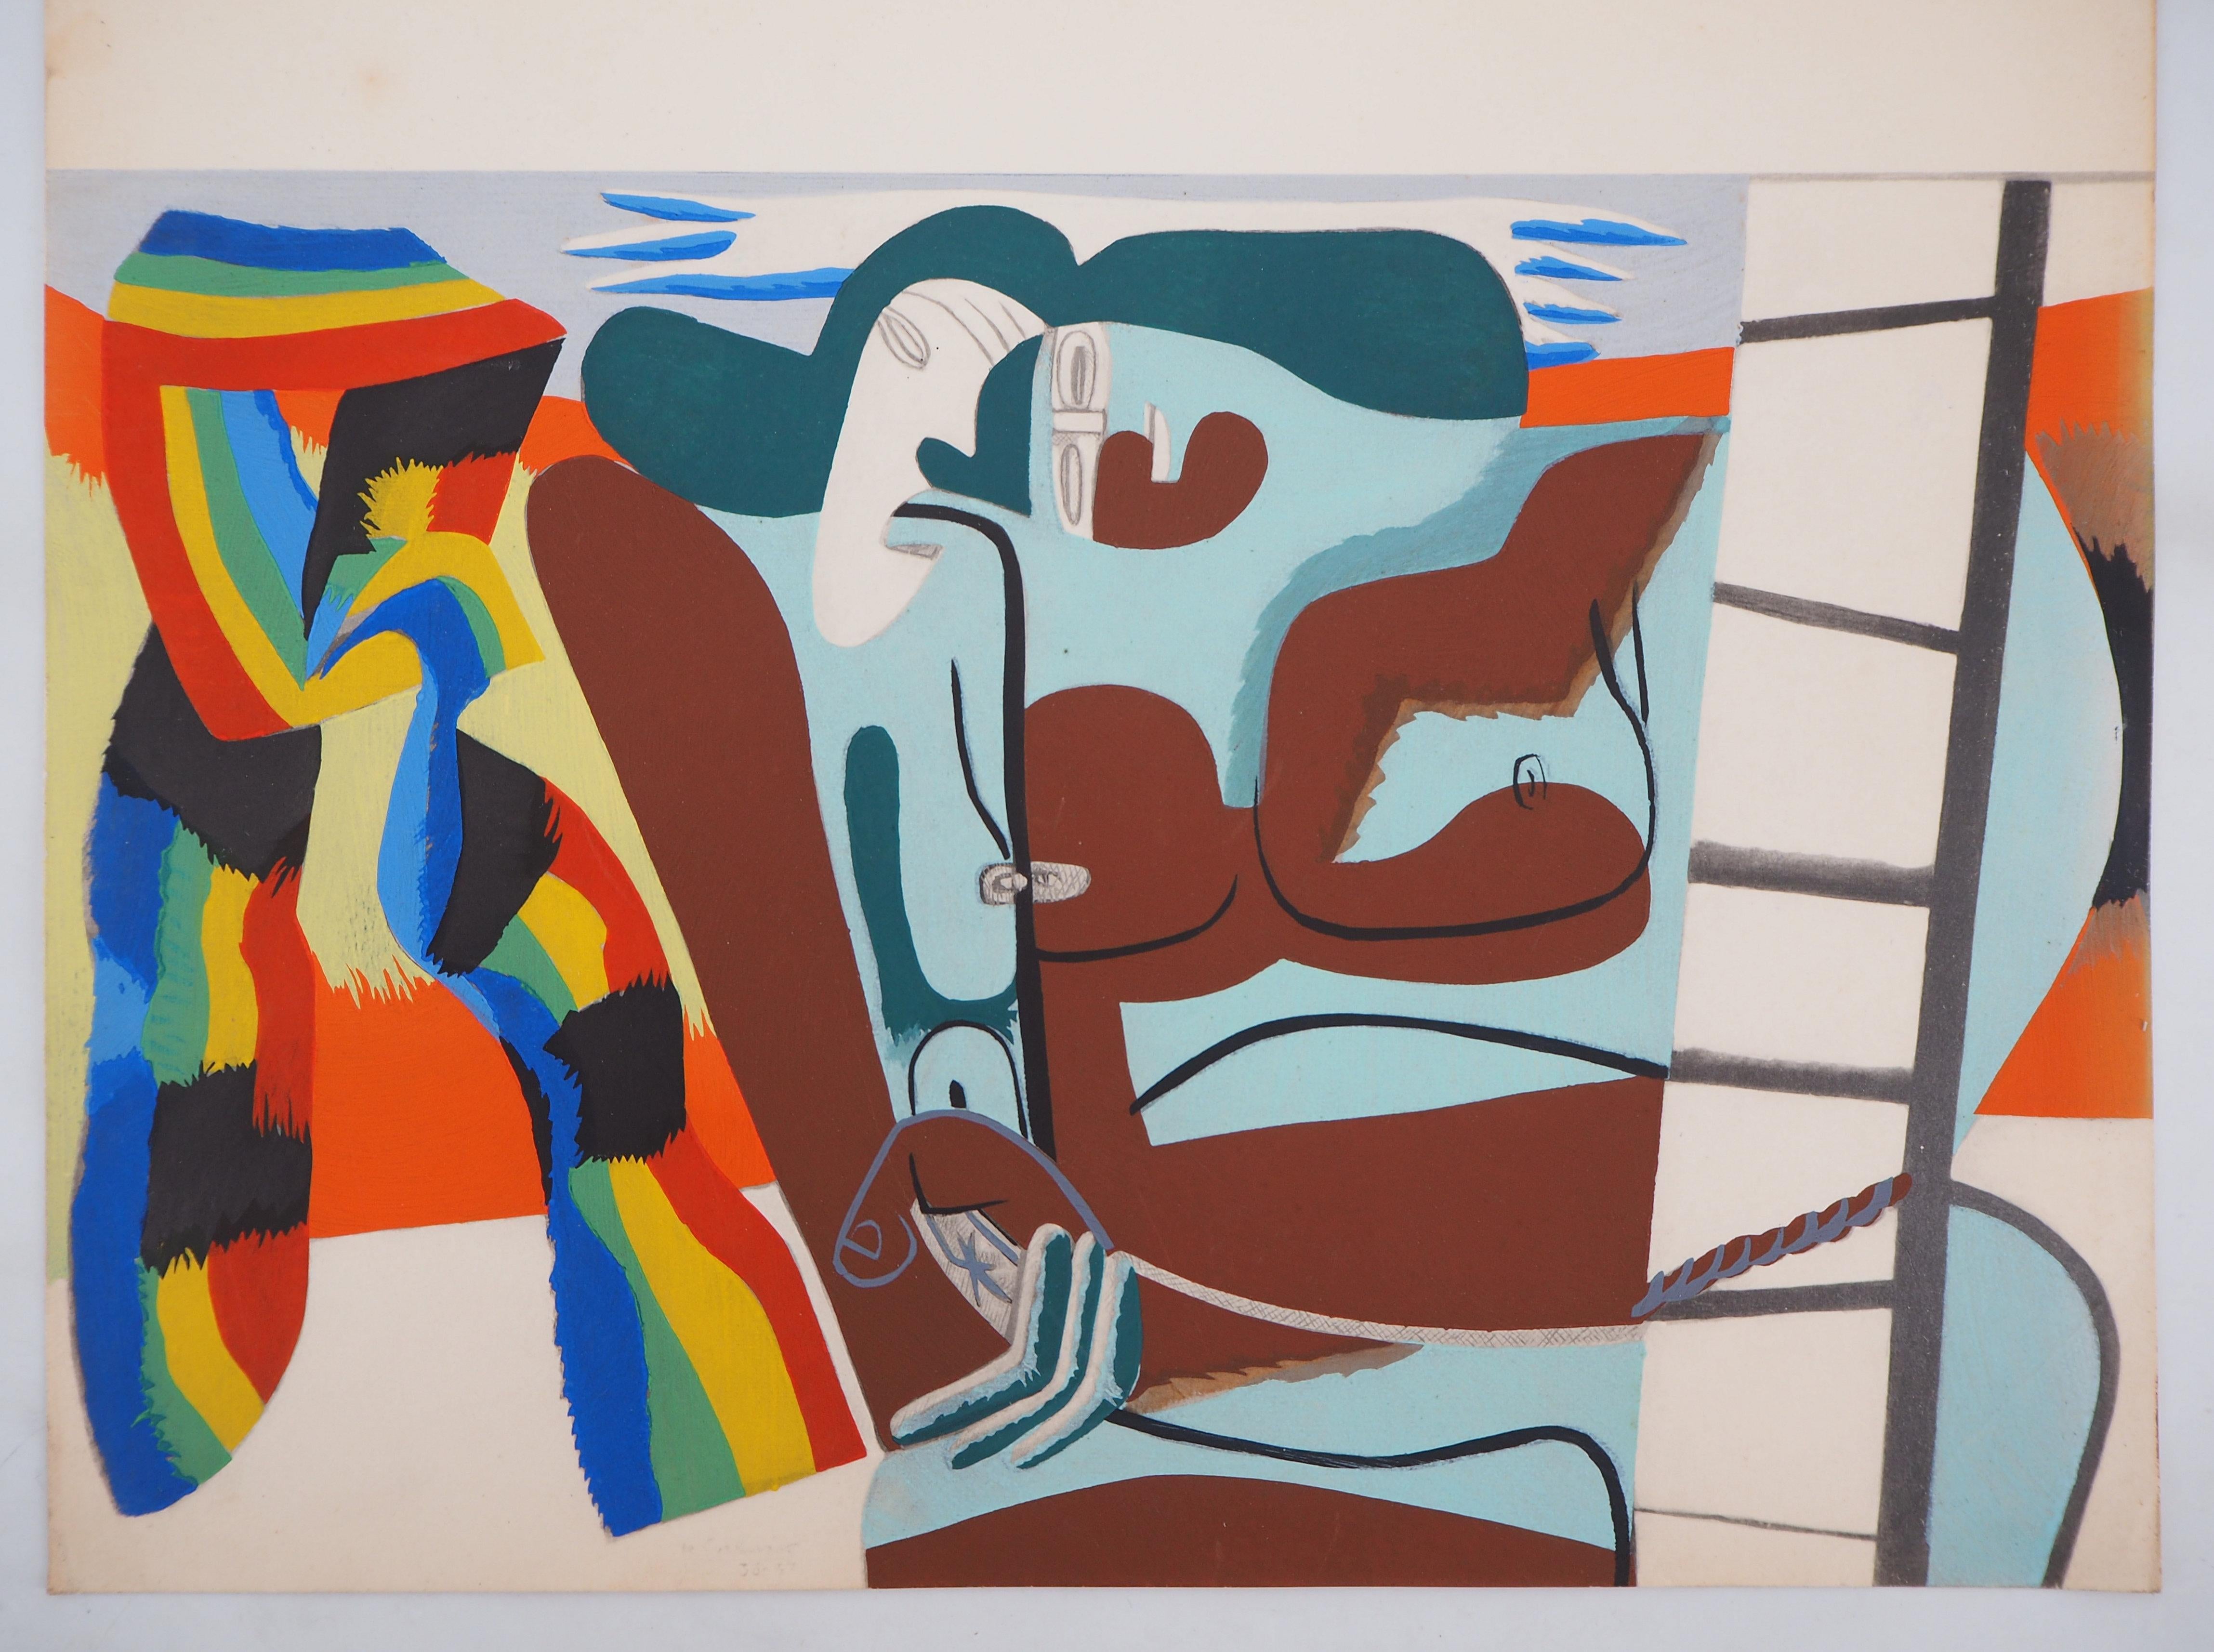 Le Corbusier Figurative Print – Pride Pride: Zwei Frauen mit Regenbogenschal - Lithographie und Aquarell-Schablone